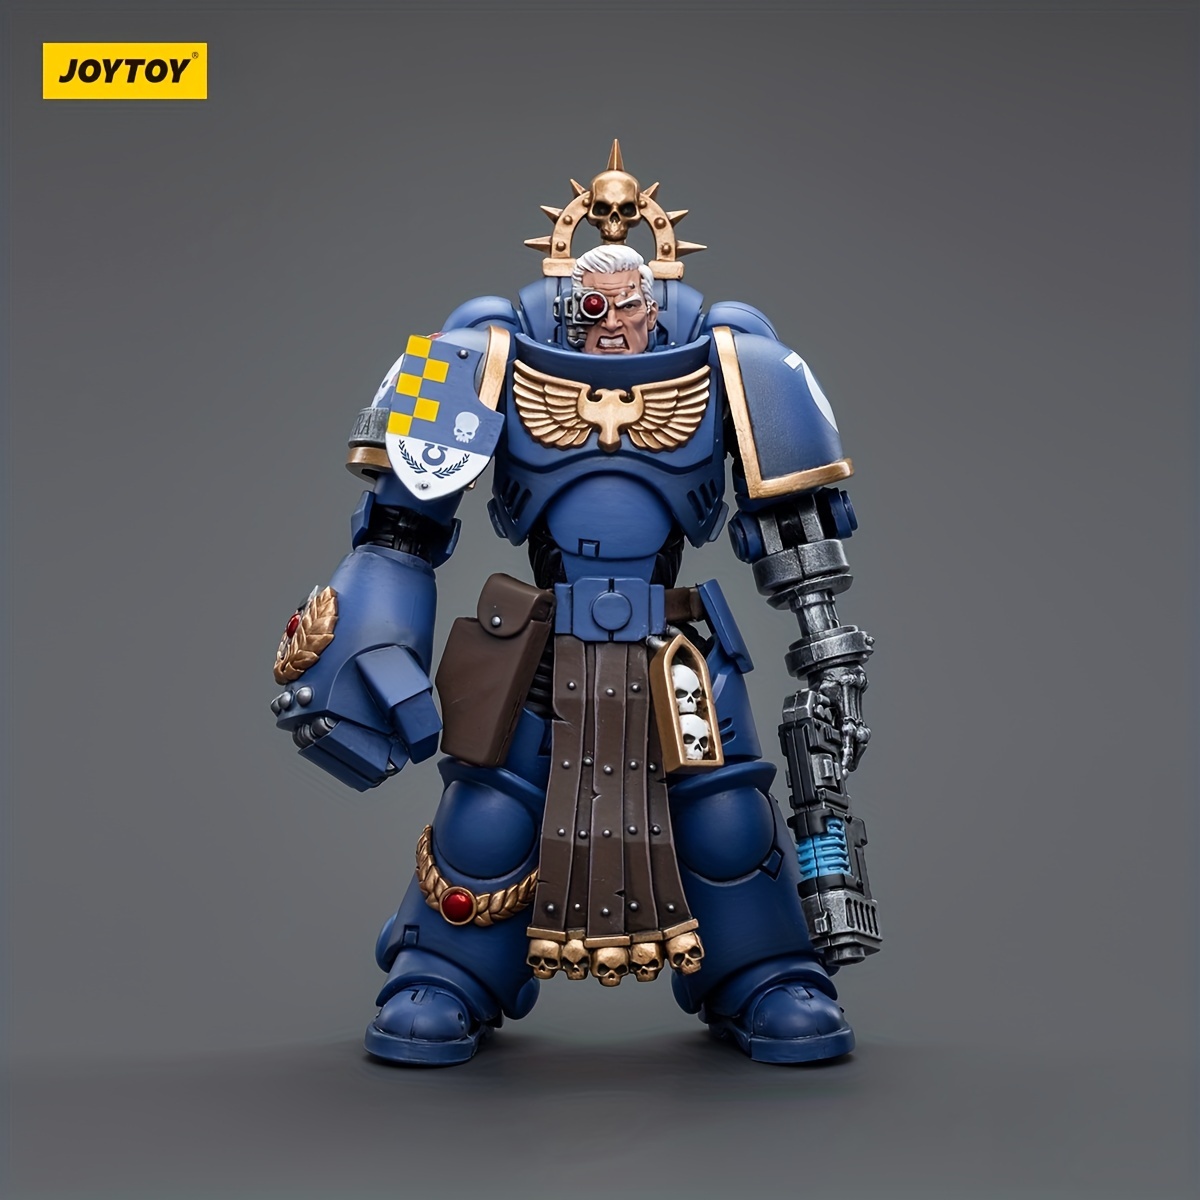 Warhammer 40,000: JoyToy Figure - Adepta Sororitas Paragon Warsuit